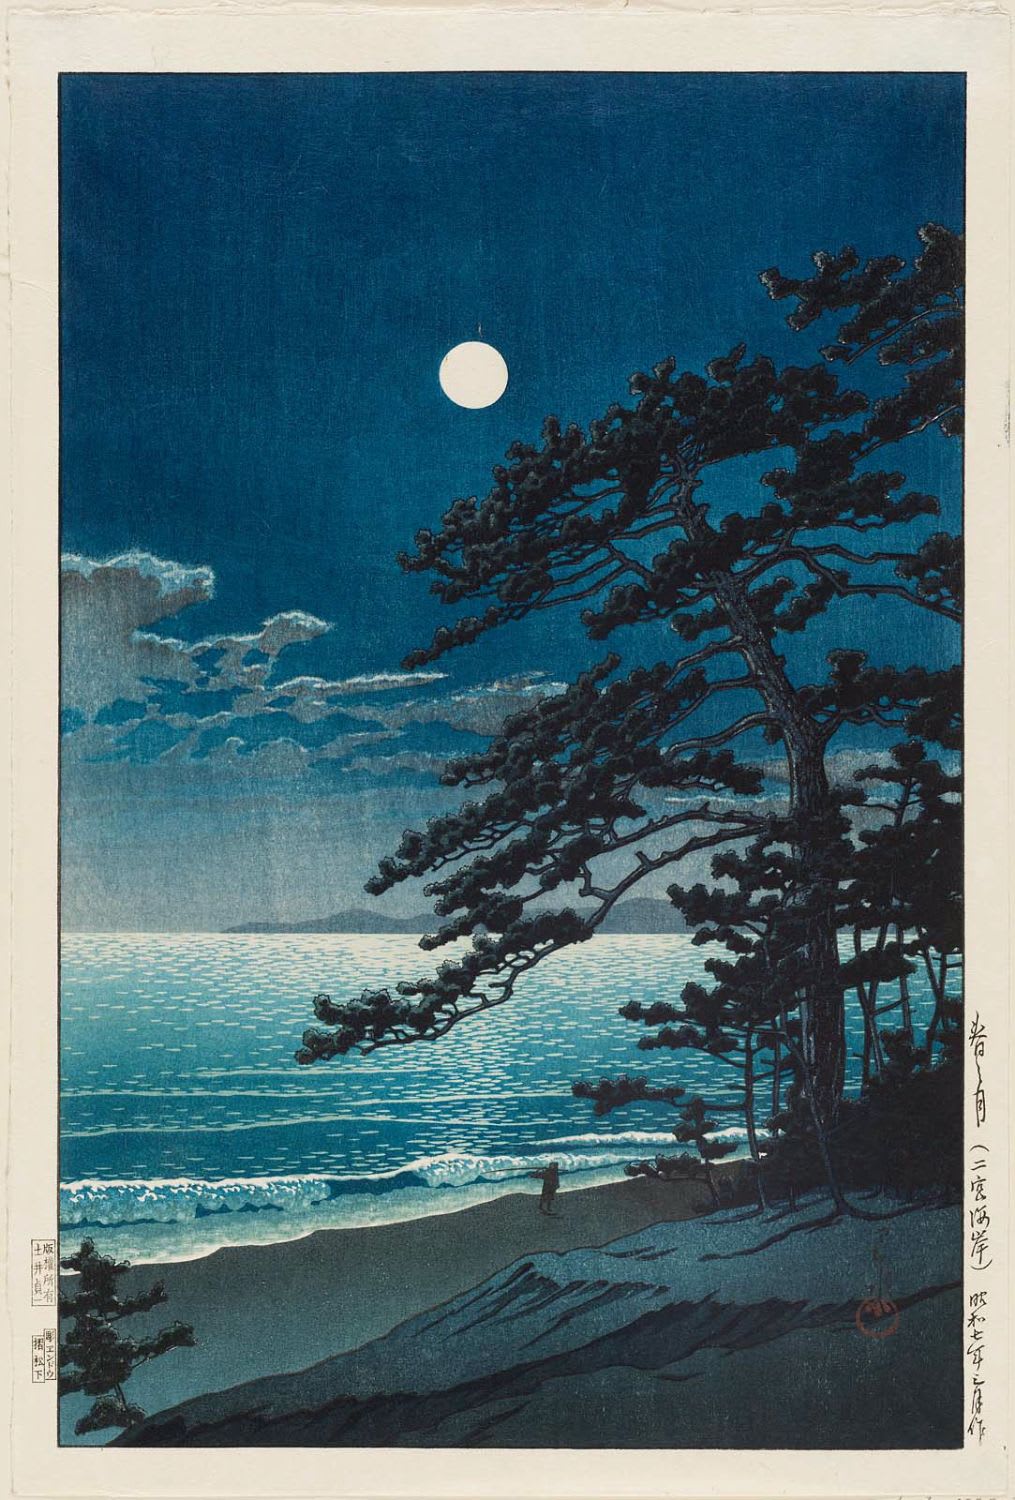 Hasui Kawase - Spring Moon at Ninomiya Beach (1932)